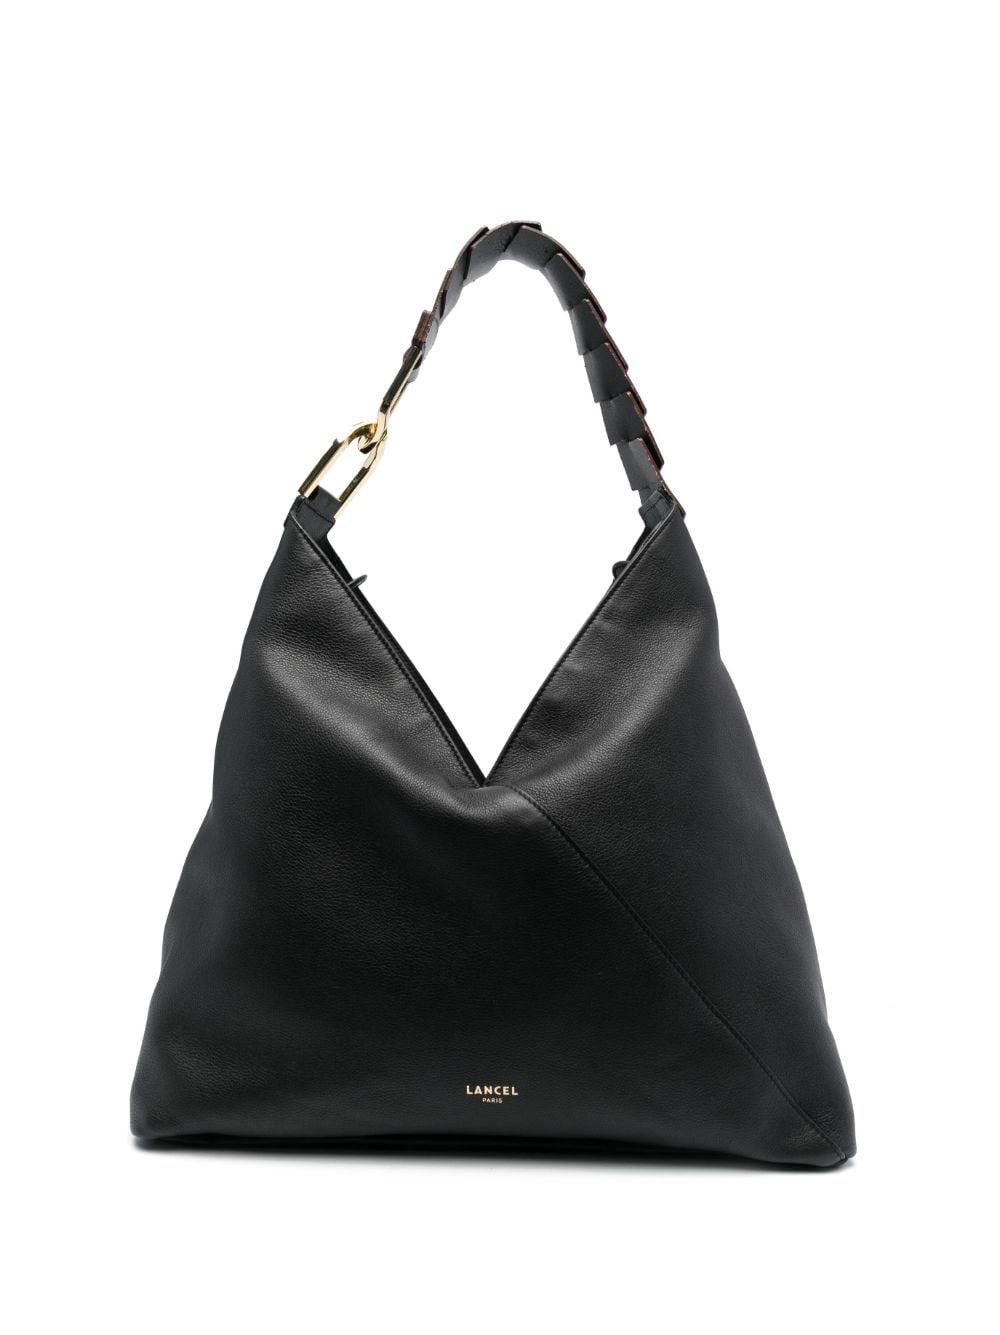 Lancel Pagode Leather Shoulder Bag in Black | Lyst